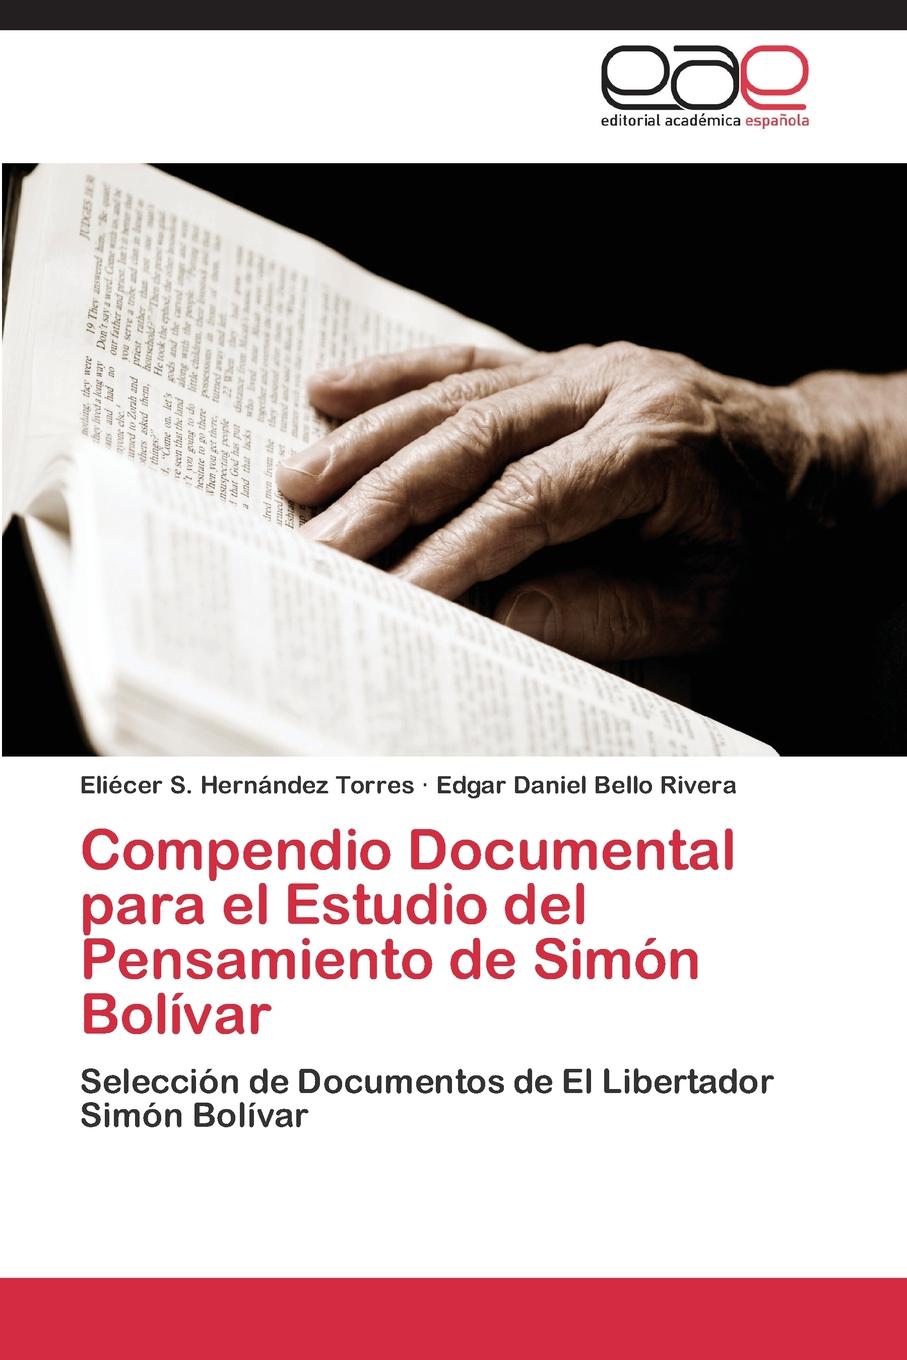 Compendio Documental para el Estudio del Pensamiento de Simon Bolivar